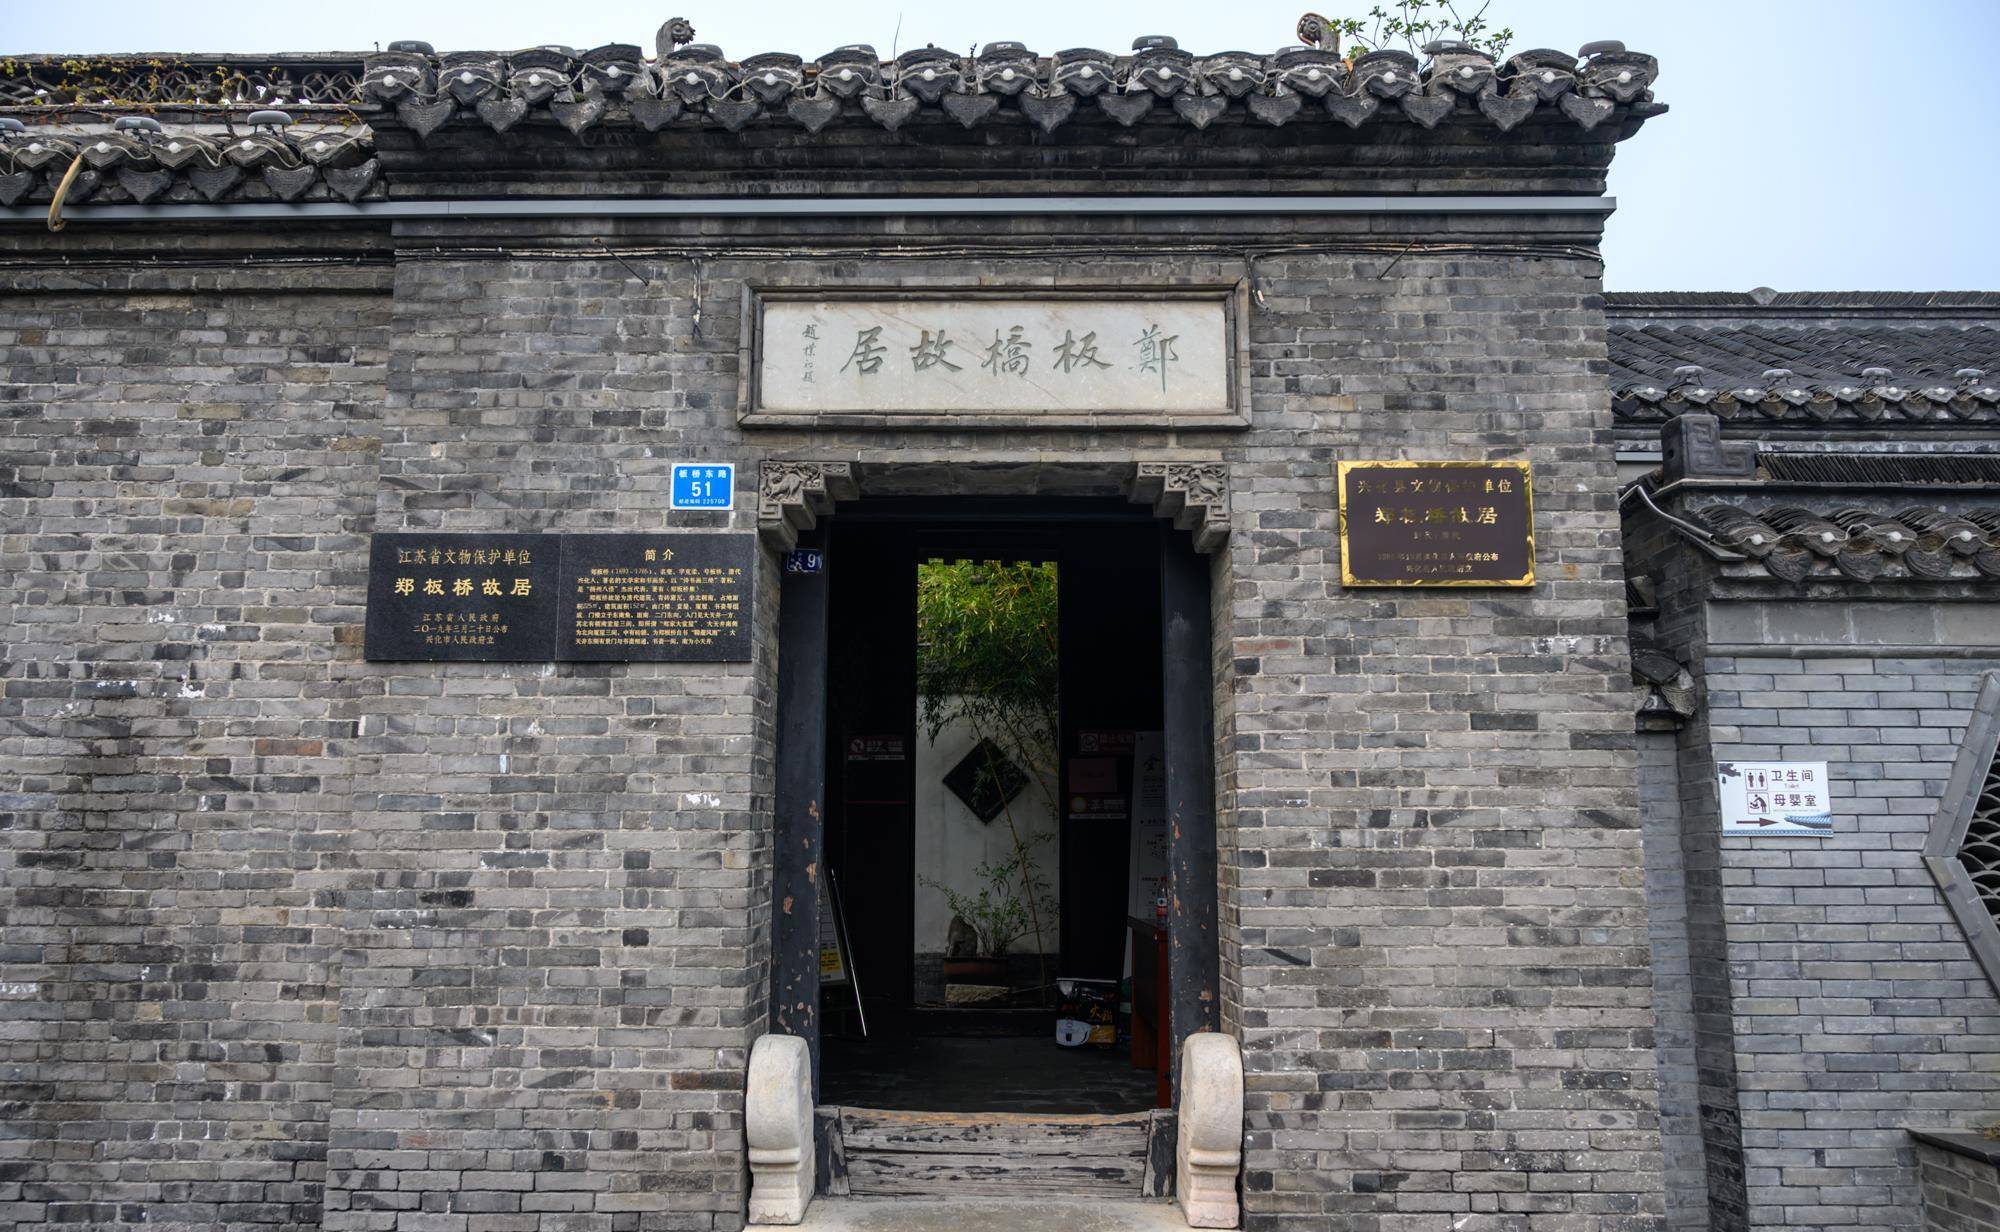 江苏兴化最著名的名人故居，隐藏在闹市中，规模不大仅8间房屋